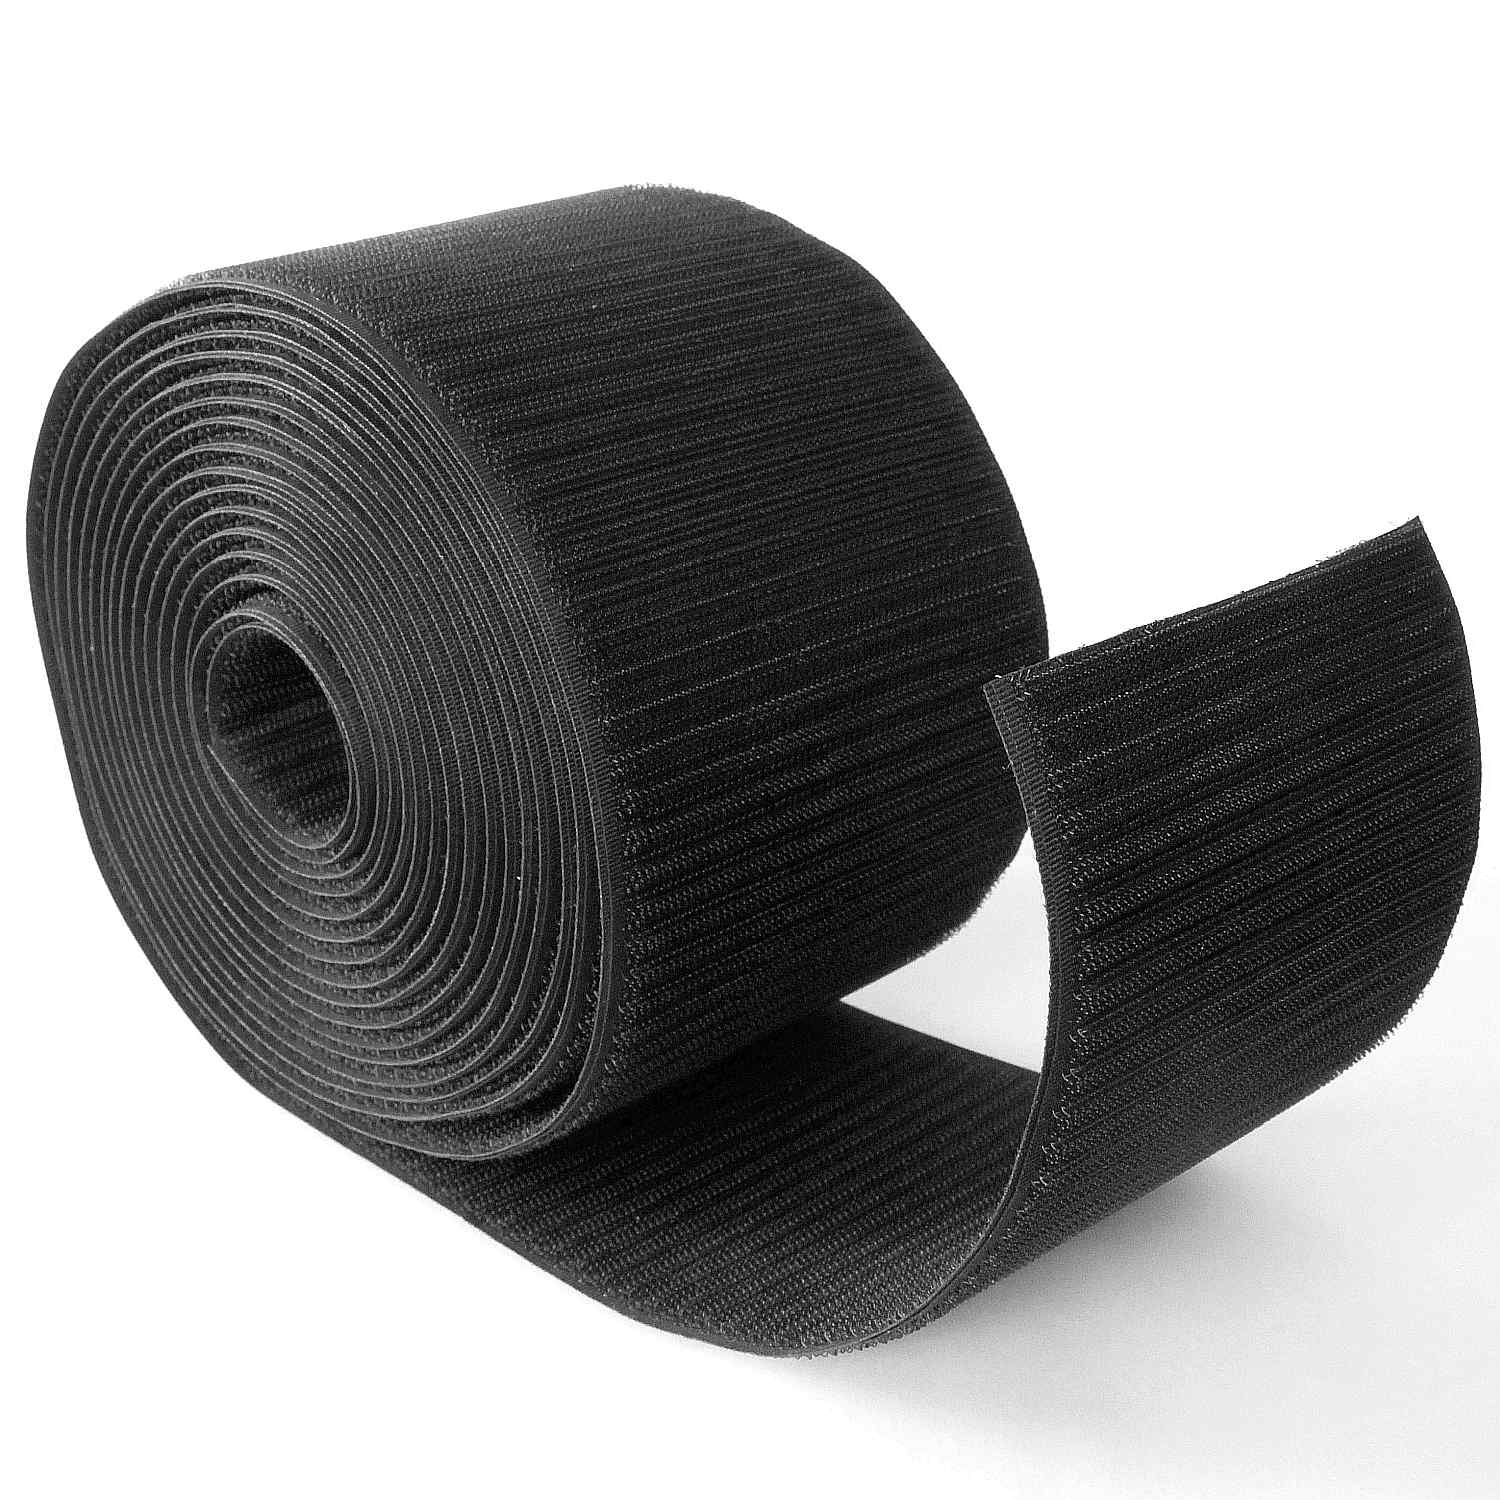 Flauschband/Veloursband selbstklebend, schwarz, 20 mm breit, Meterware